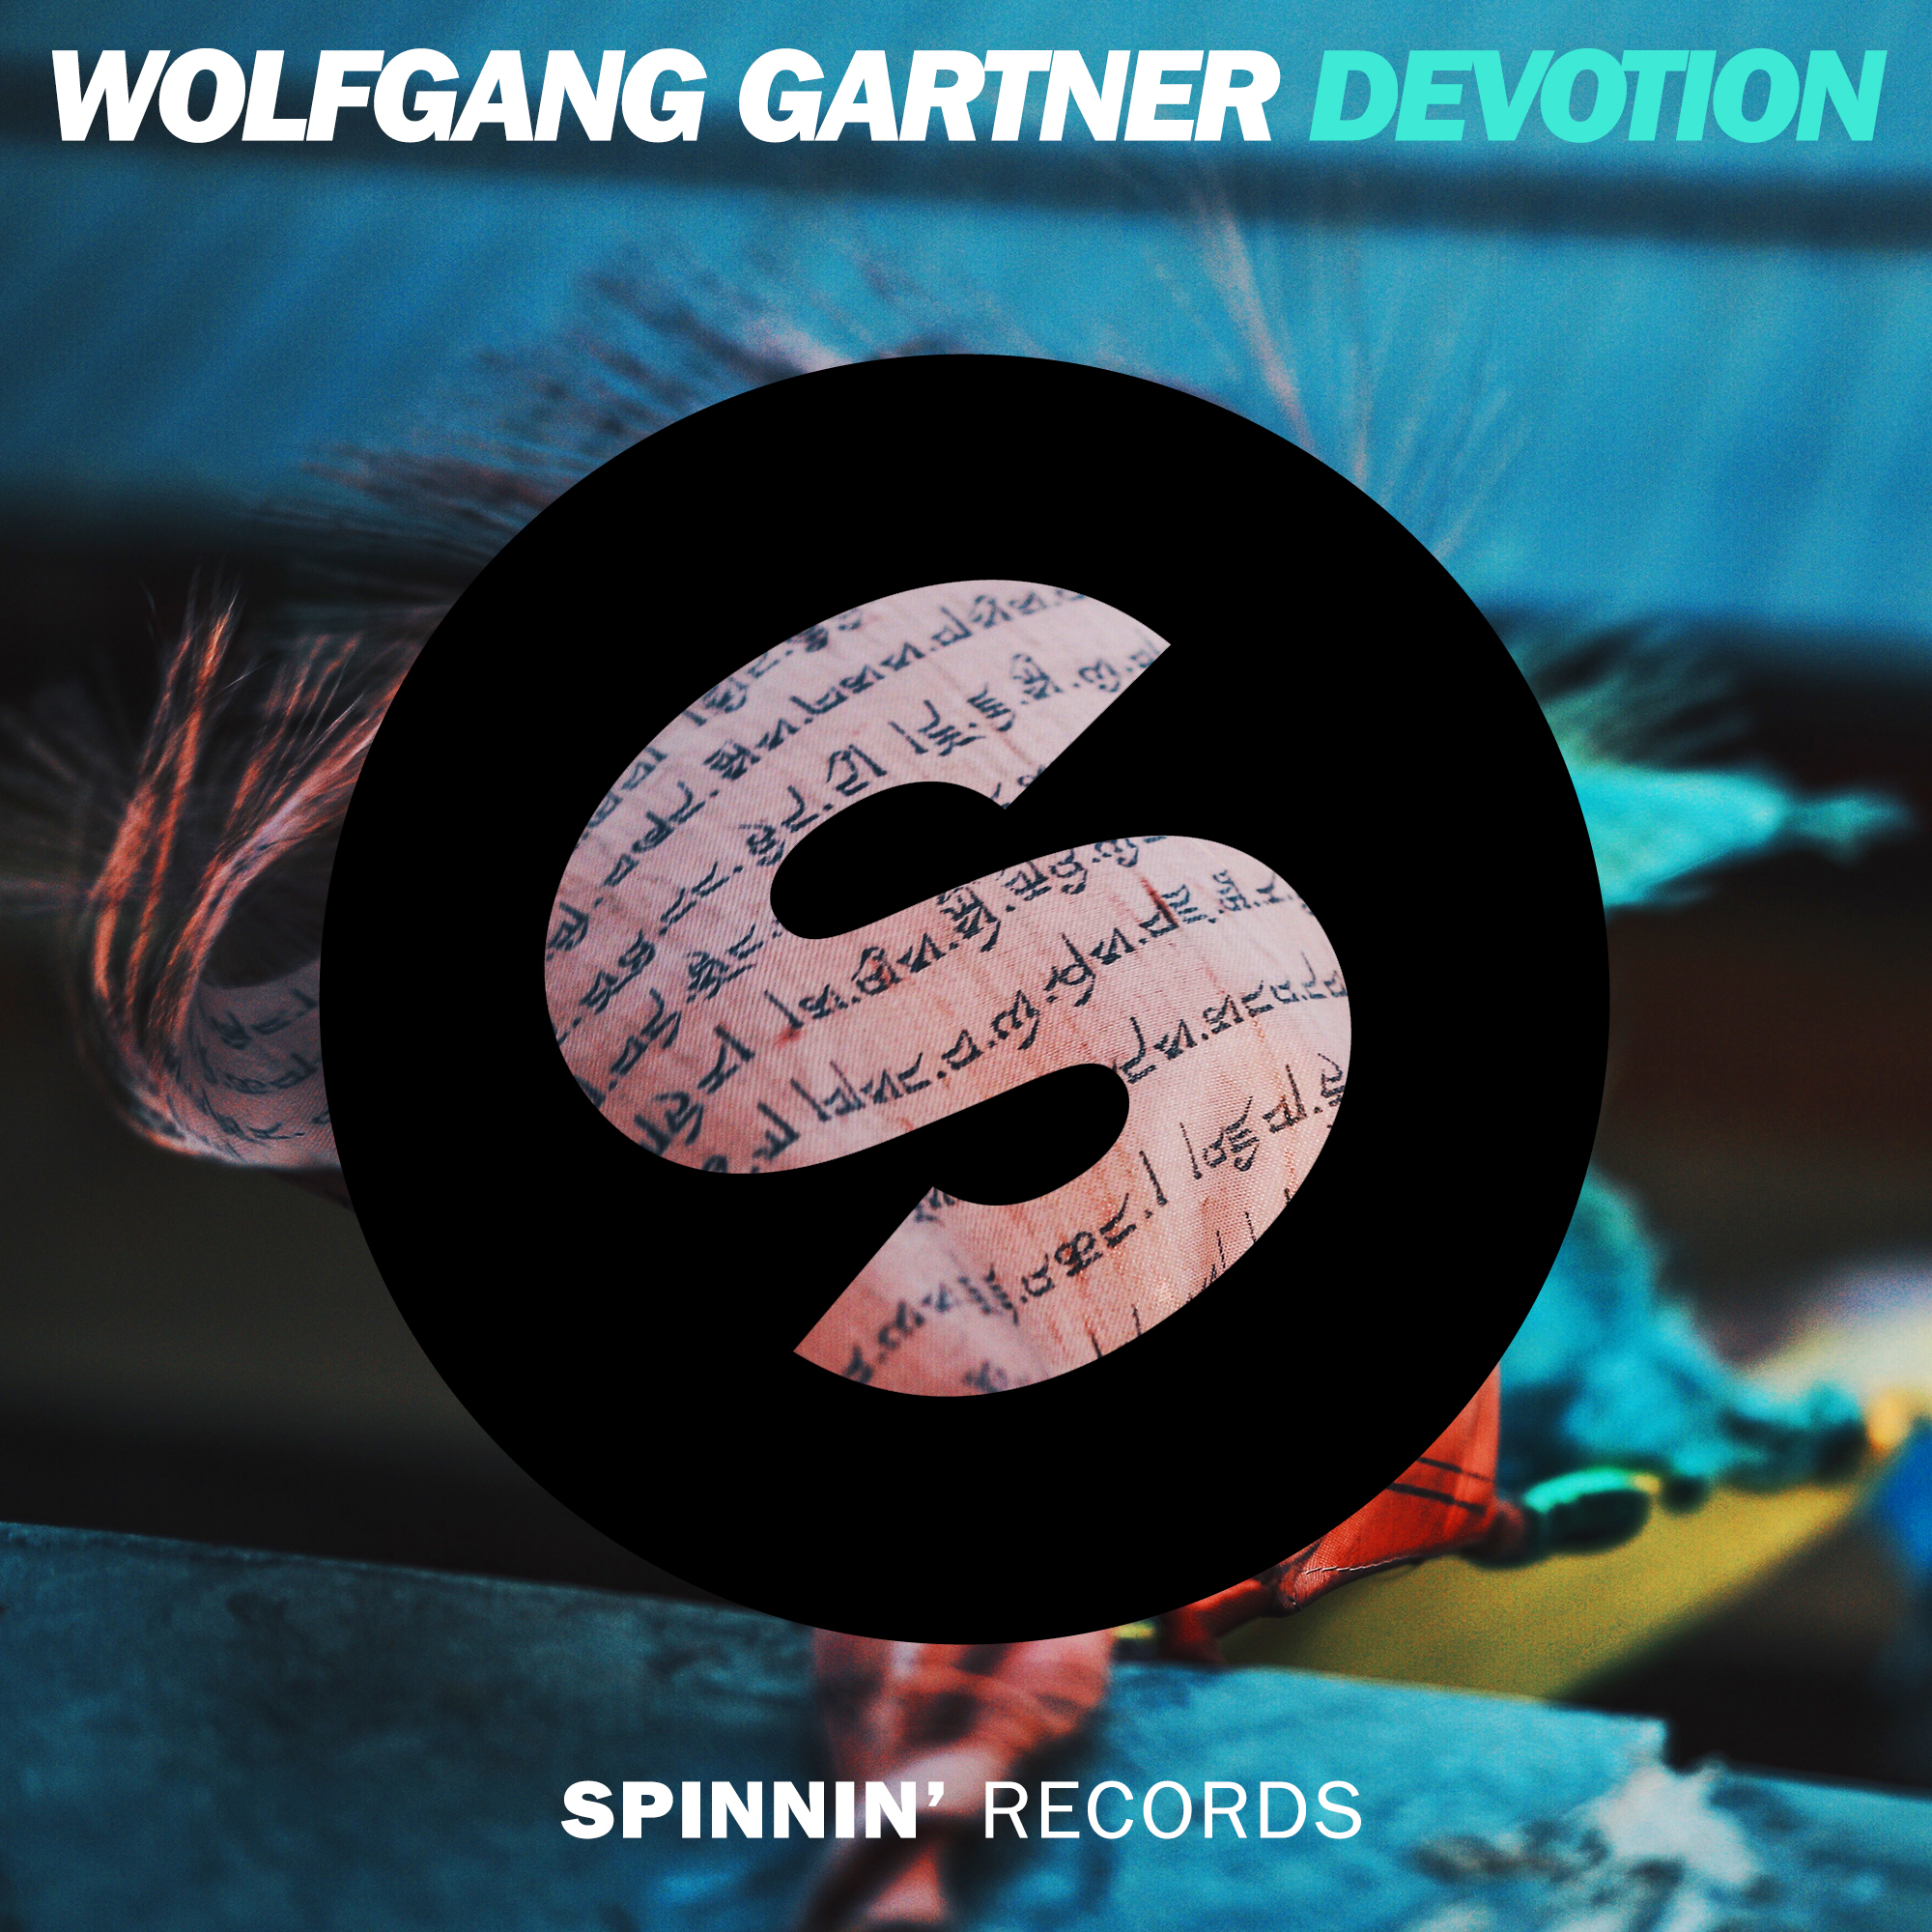 Wolfgang Gartner - Devotion [Spinnin' Records] - Dance Rebels